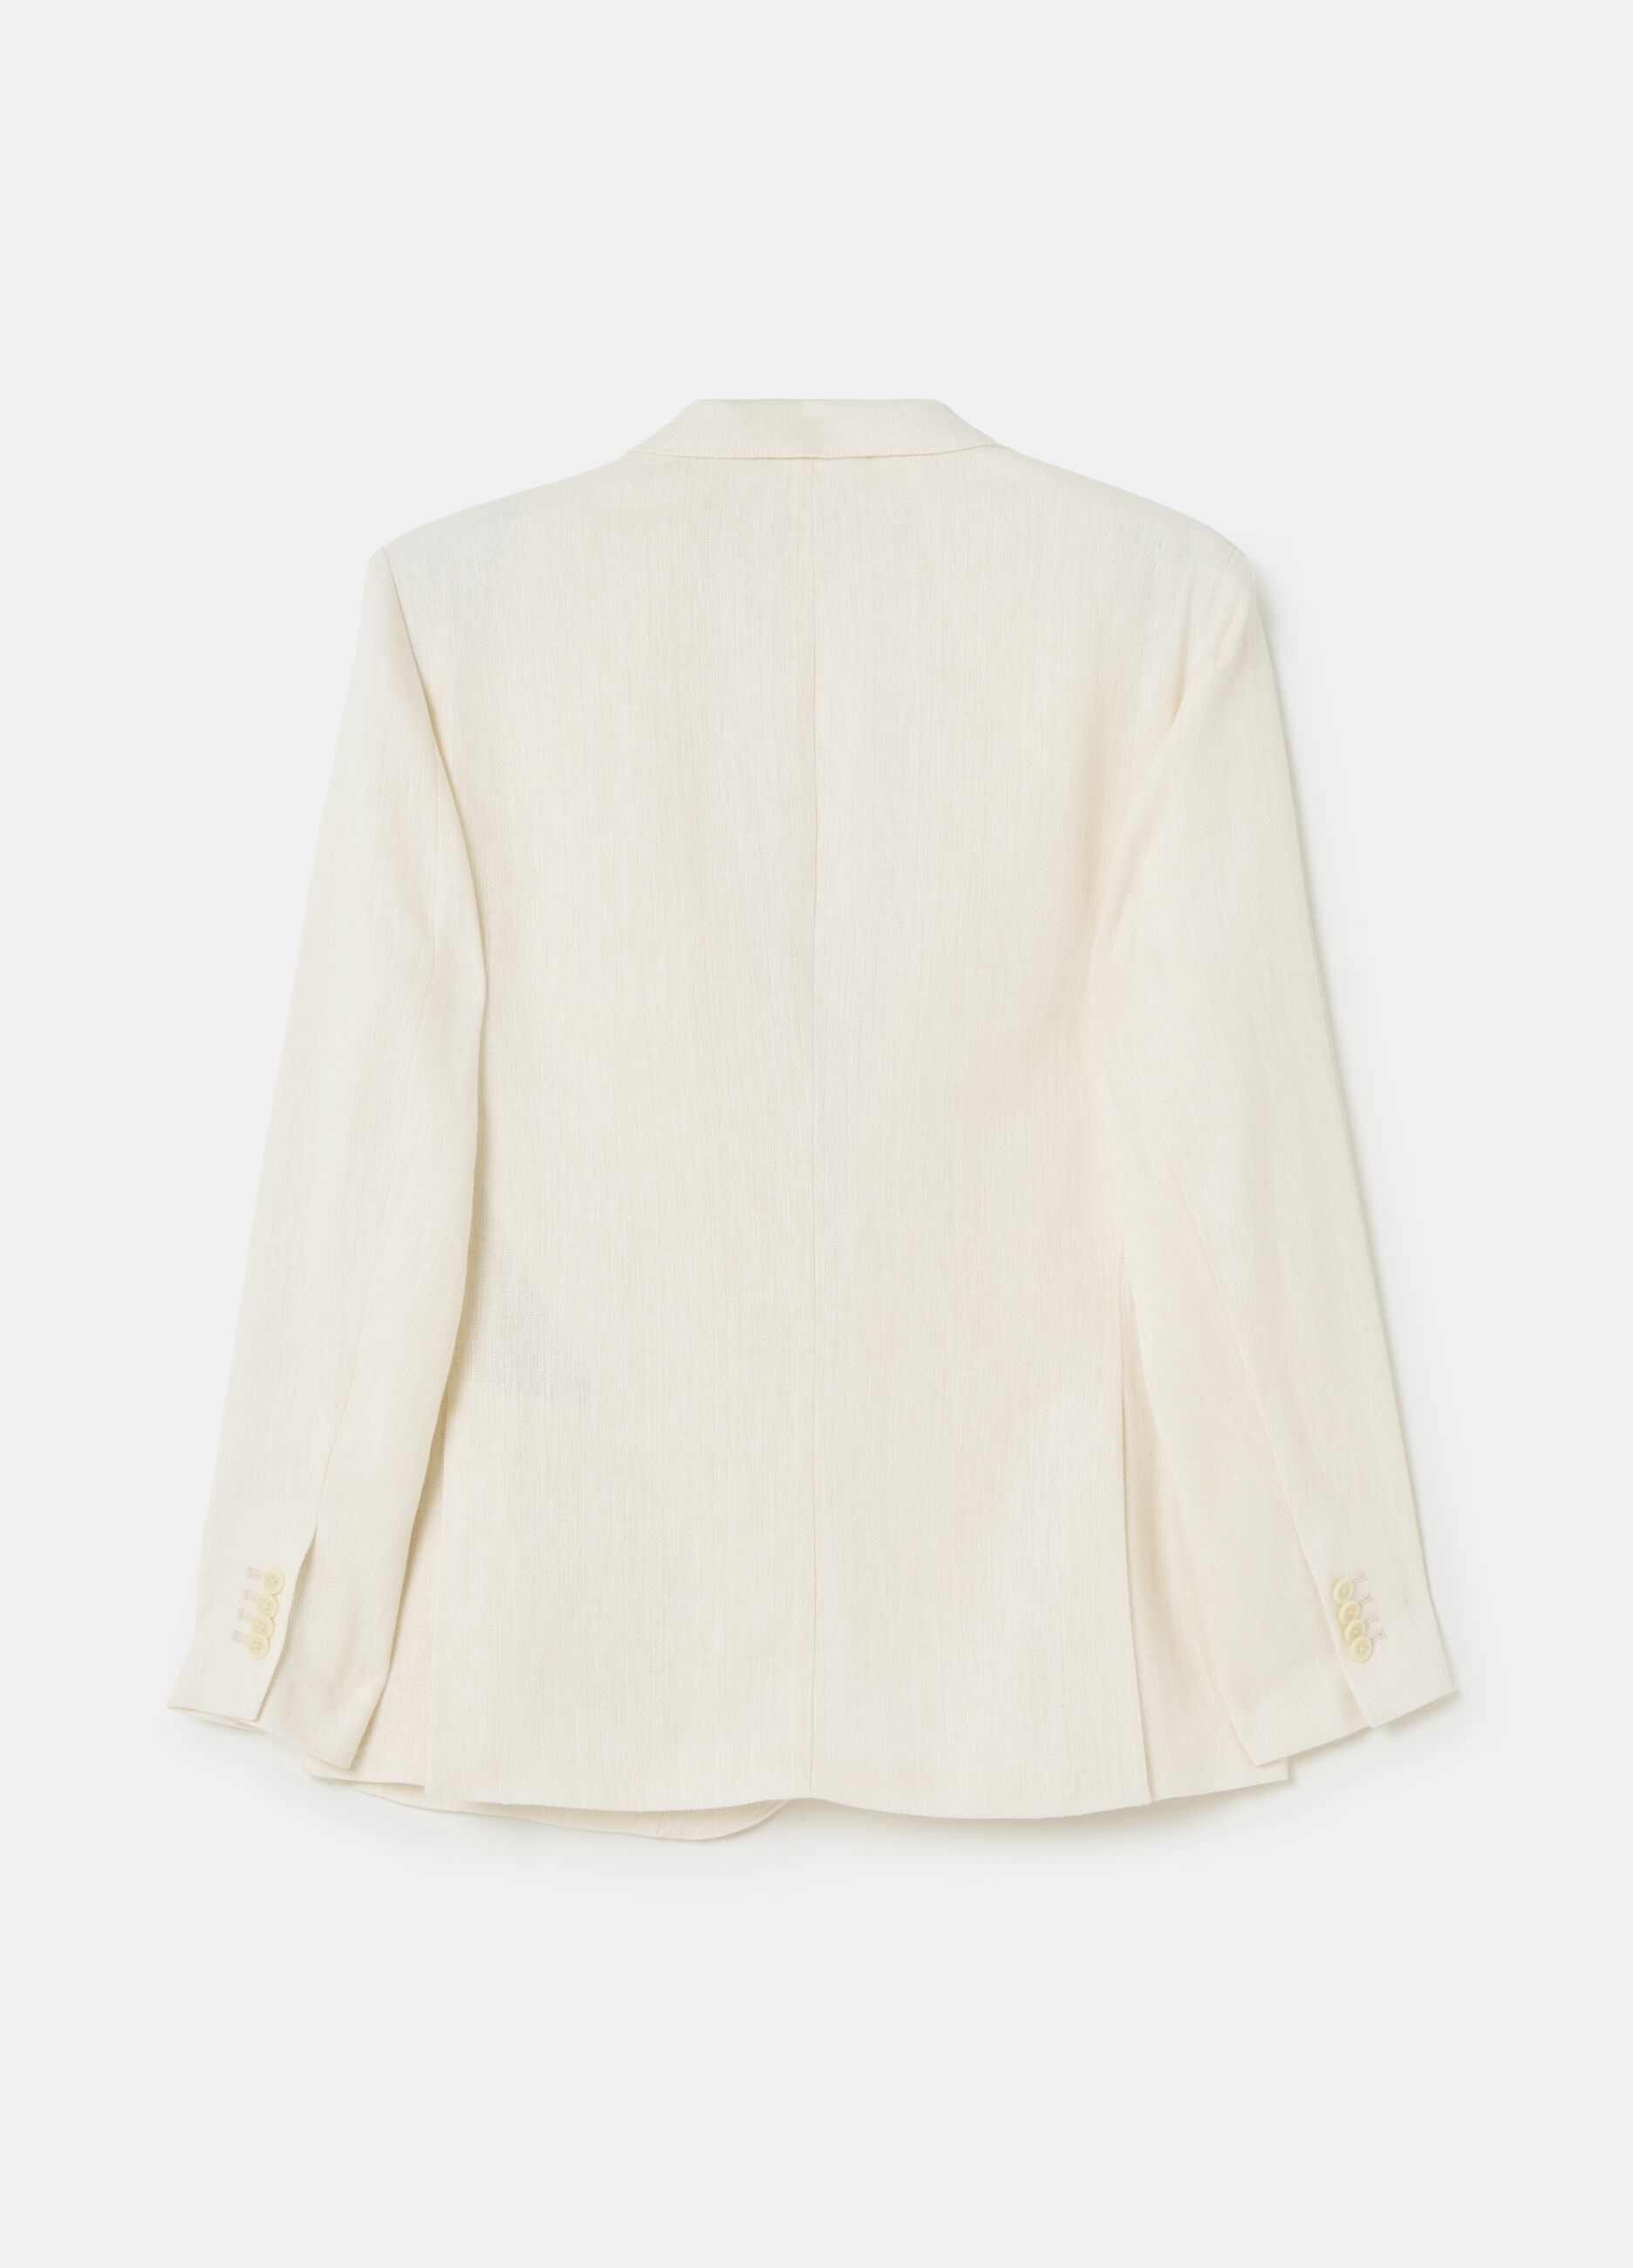 Contemporary single-breasted blazer in linen